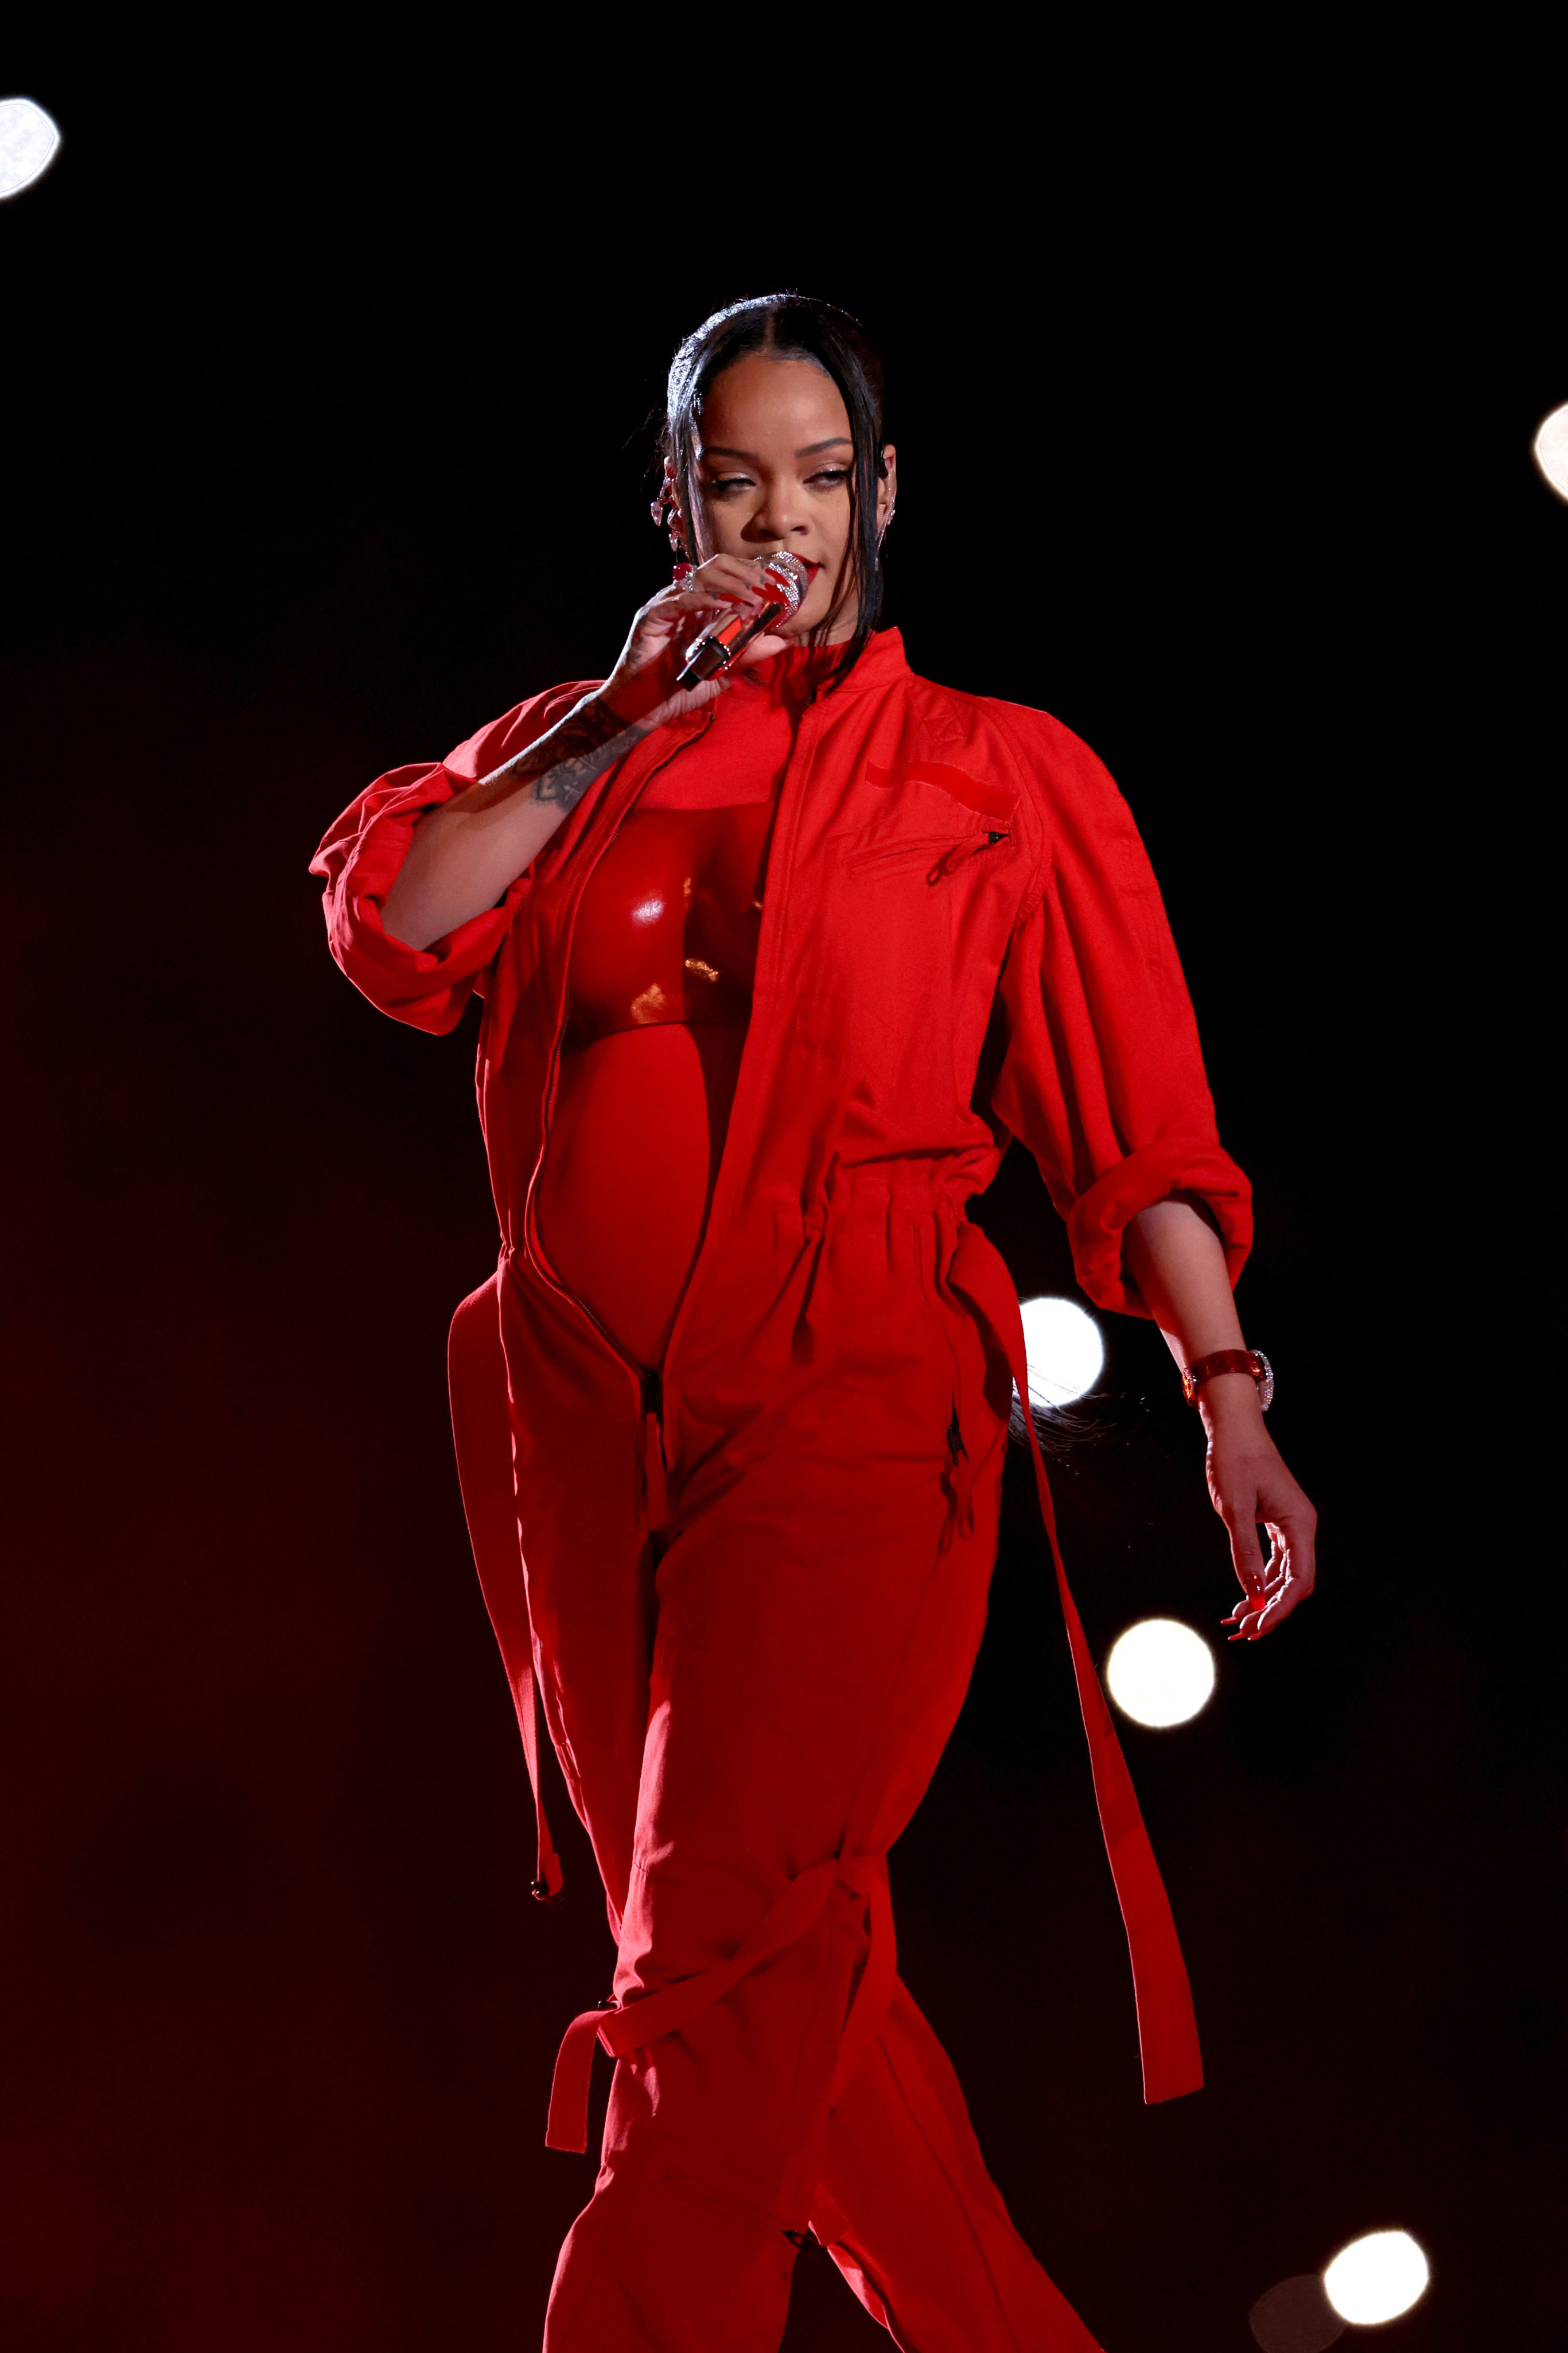 Rihanna Announces She’s Pregnant Again at the Super Bowl